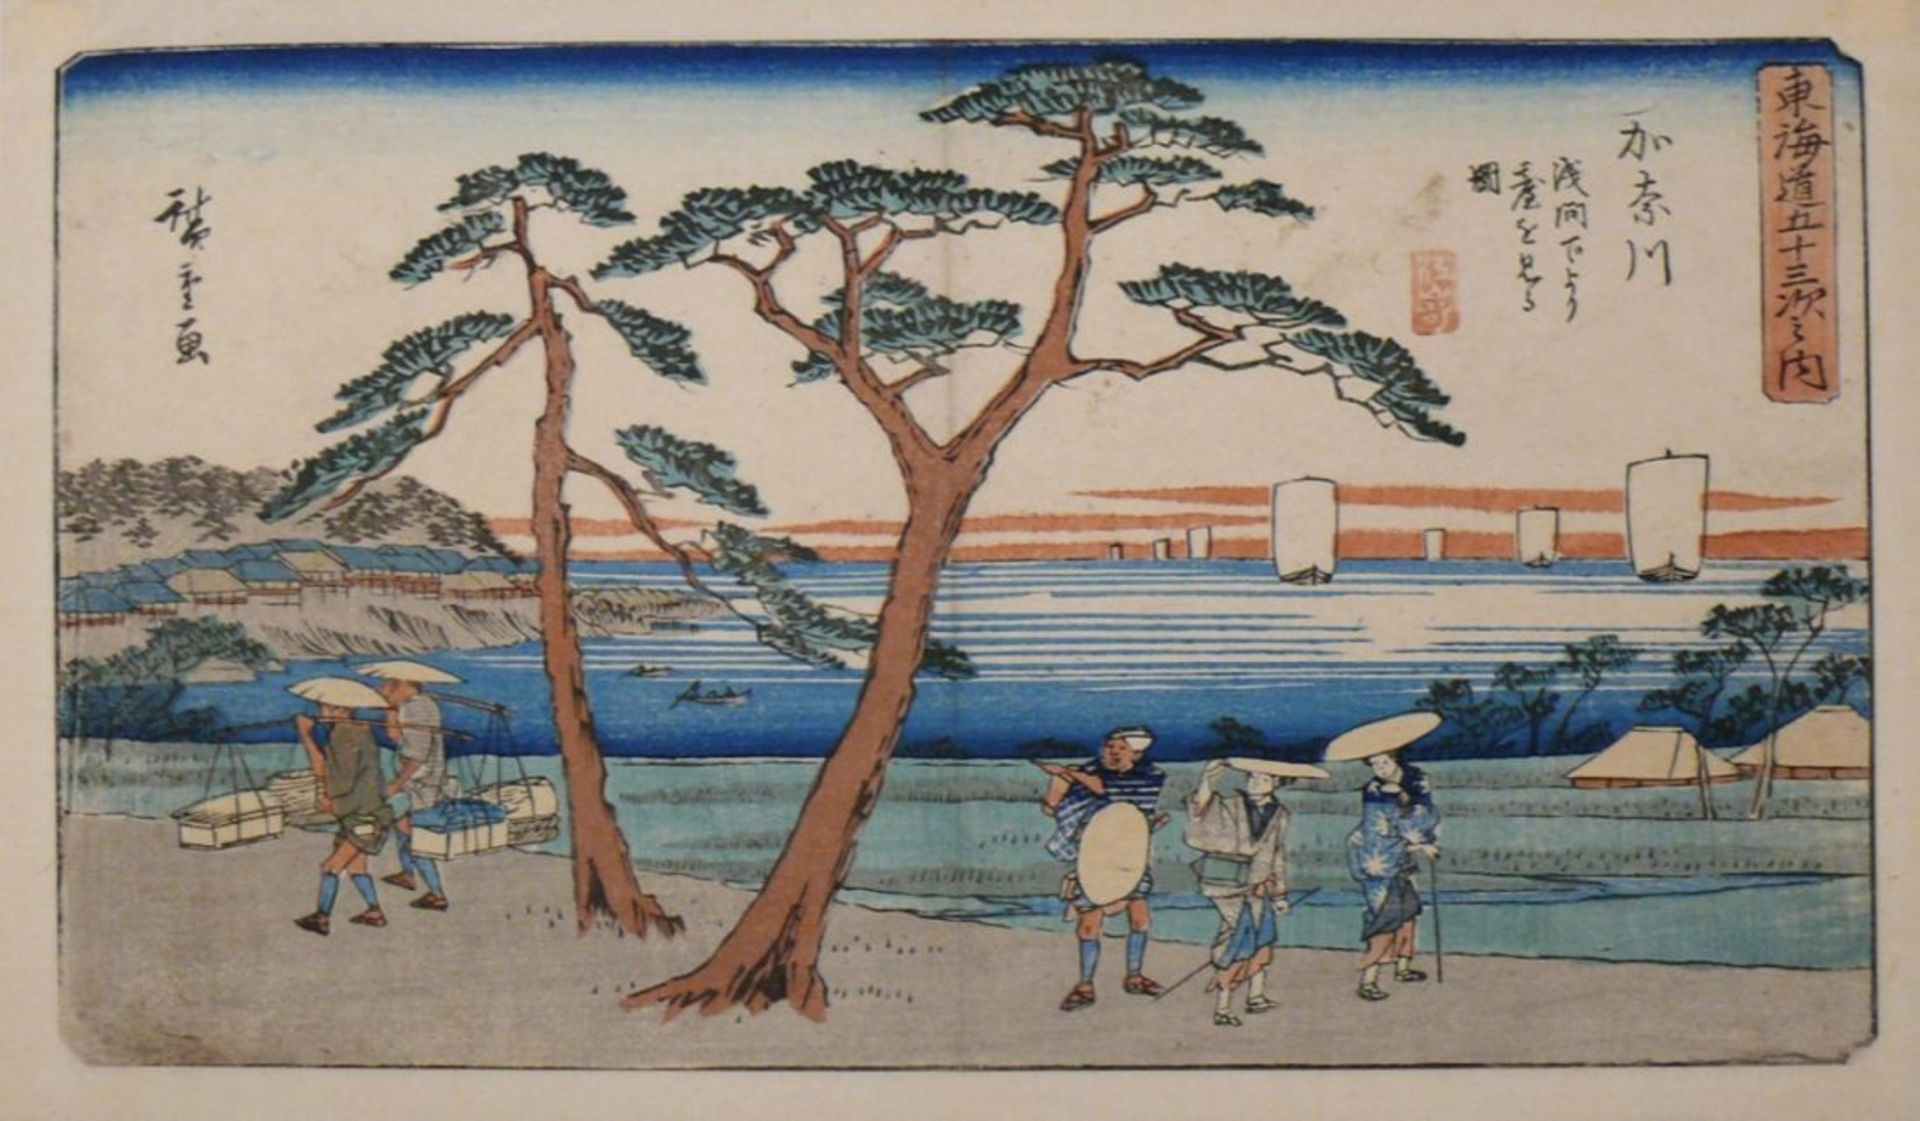 HIROSHIGE, Ando (1797 - 1858) "Tokaido - Bild 2 aus 2